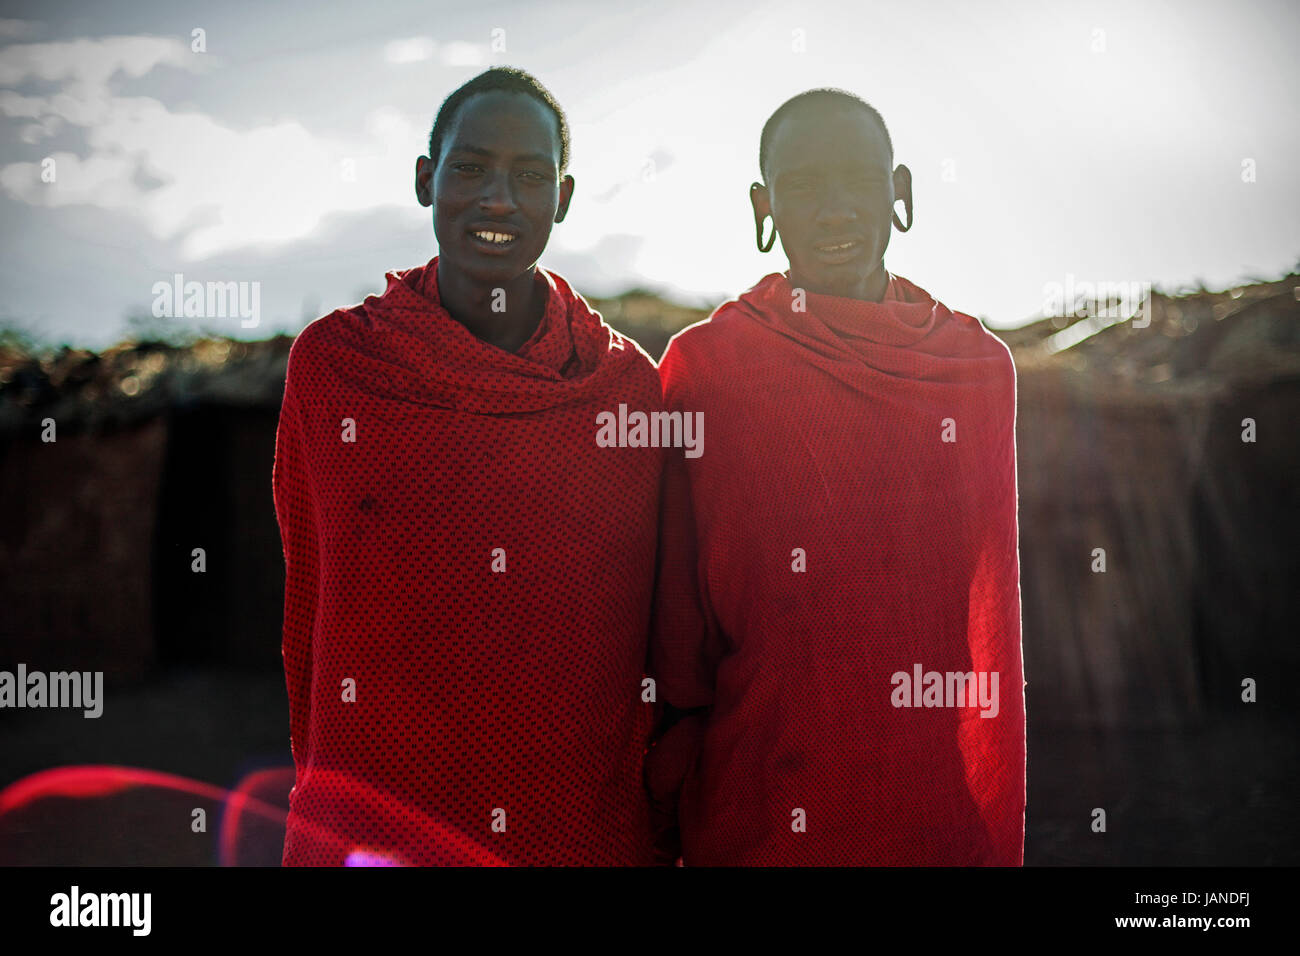 Two young masaii men in Kenya. Stock Photo